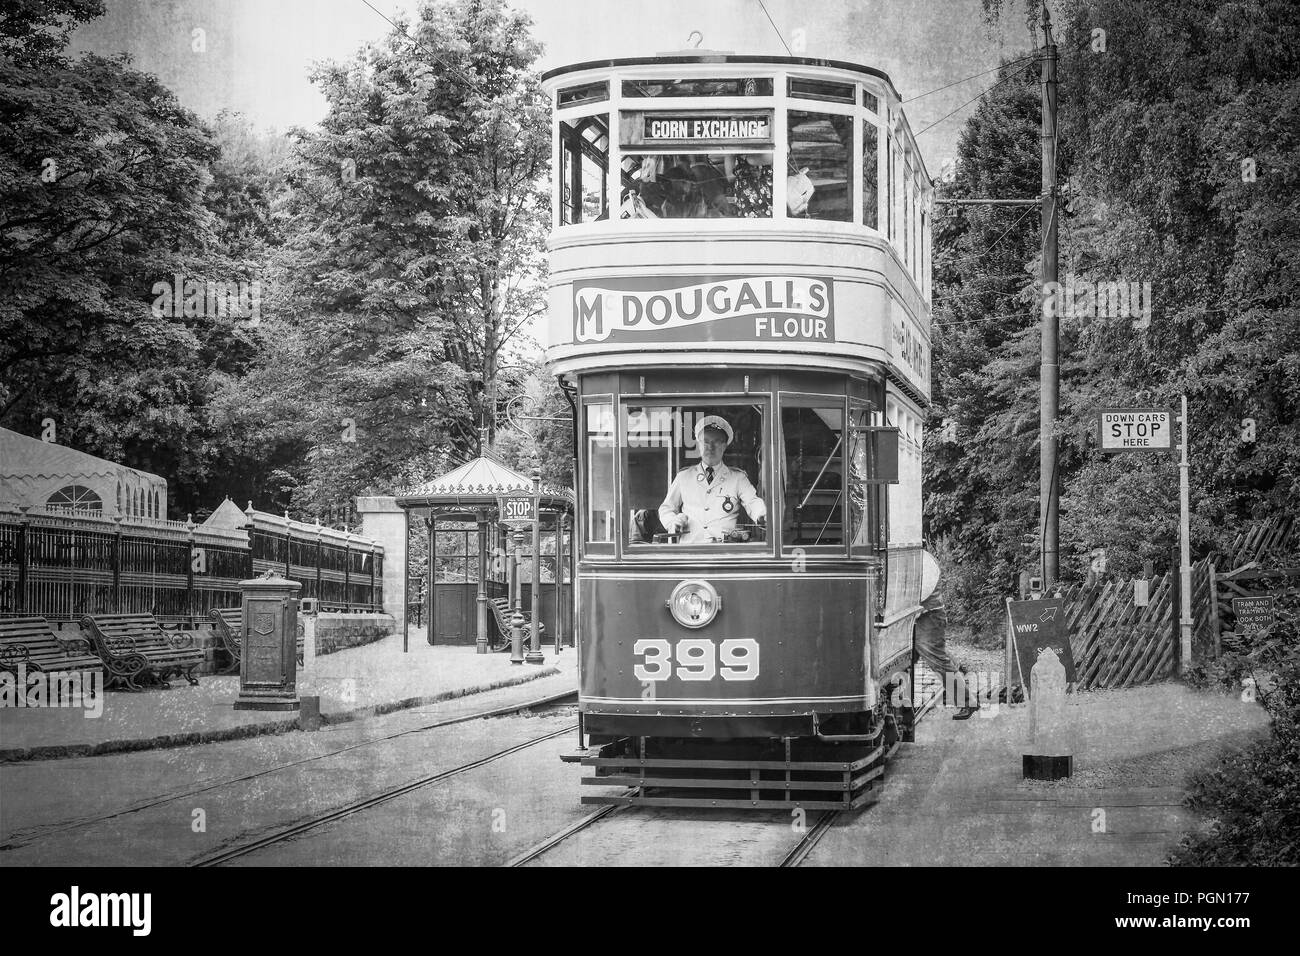 Crich Straßenbahn Dorf 1940er Veranstaltung. Schwarz & Weiß vintage Street Scene, Double Decker Straßenbahn fährt entlang der Linie uniformierten Fahrer steuert sichtbar. Stockfoto